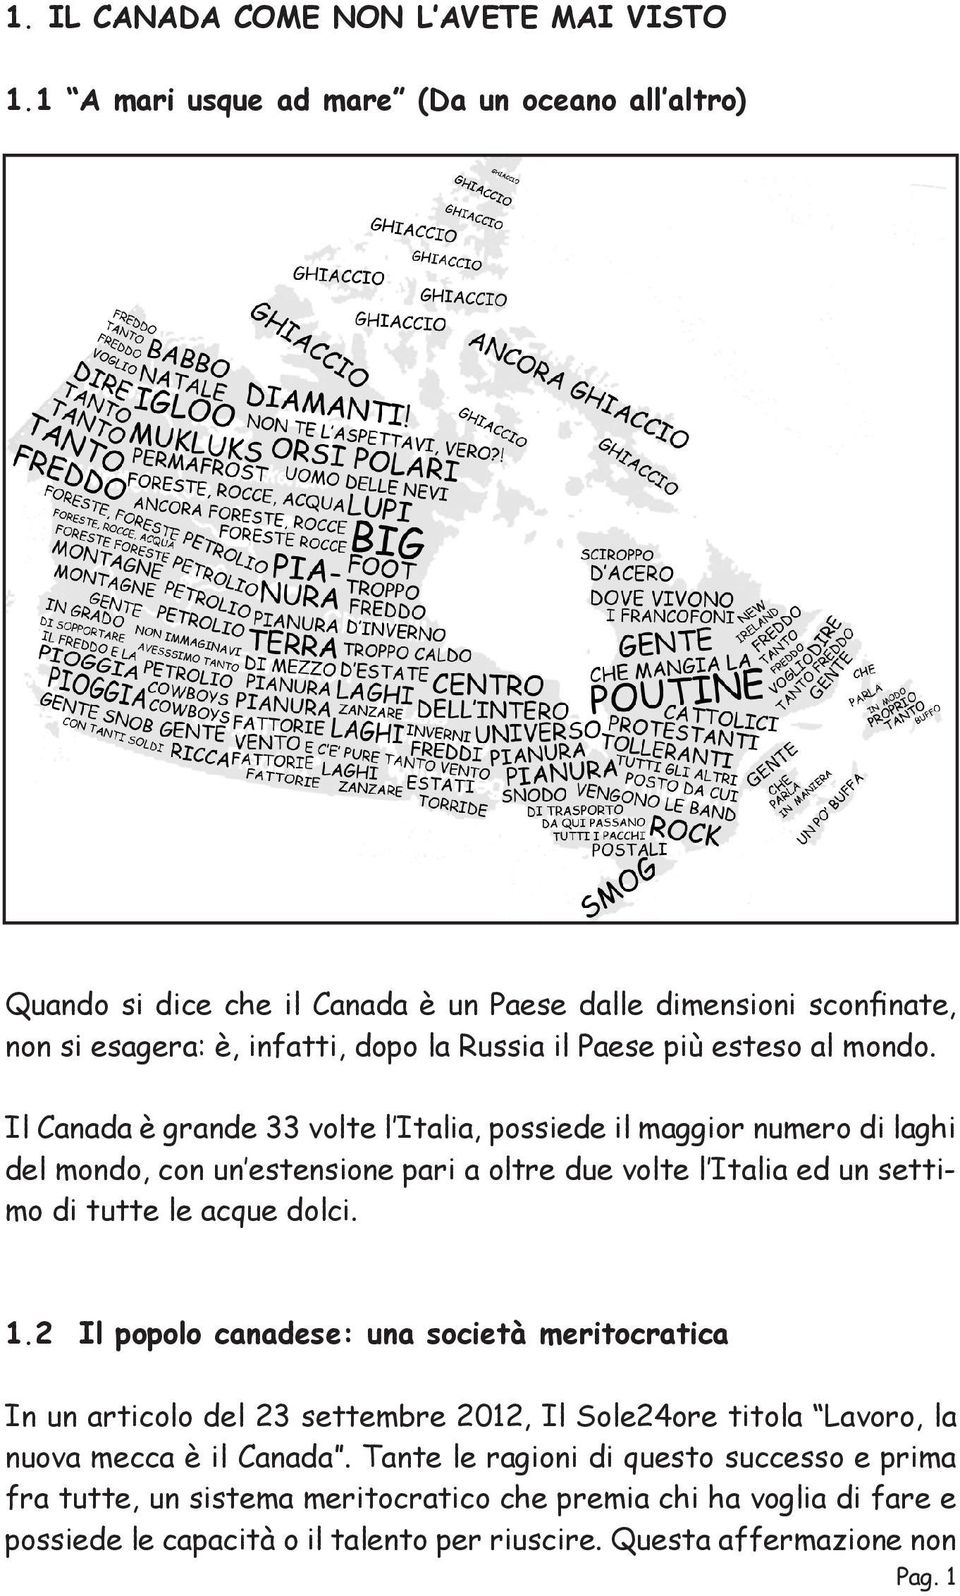 mondo. Il Canada è grande 33 volte l Italia, possiede il maggior numero di laghi del mondo, con un estensione pari a oltre due volte l Italia ed un settimo di tutte le acque dolci. 1.